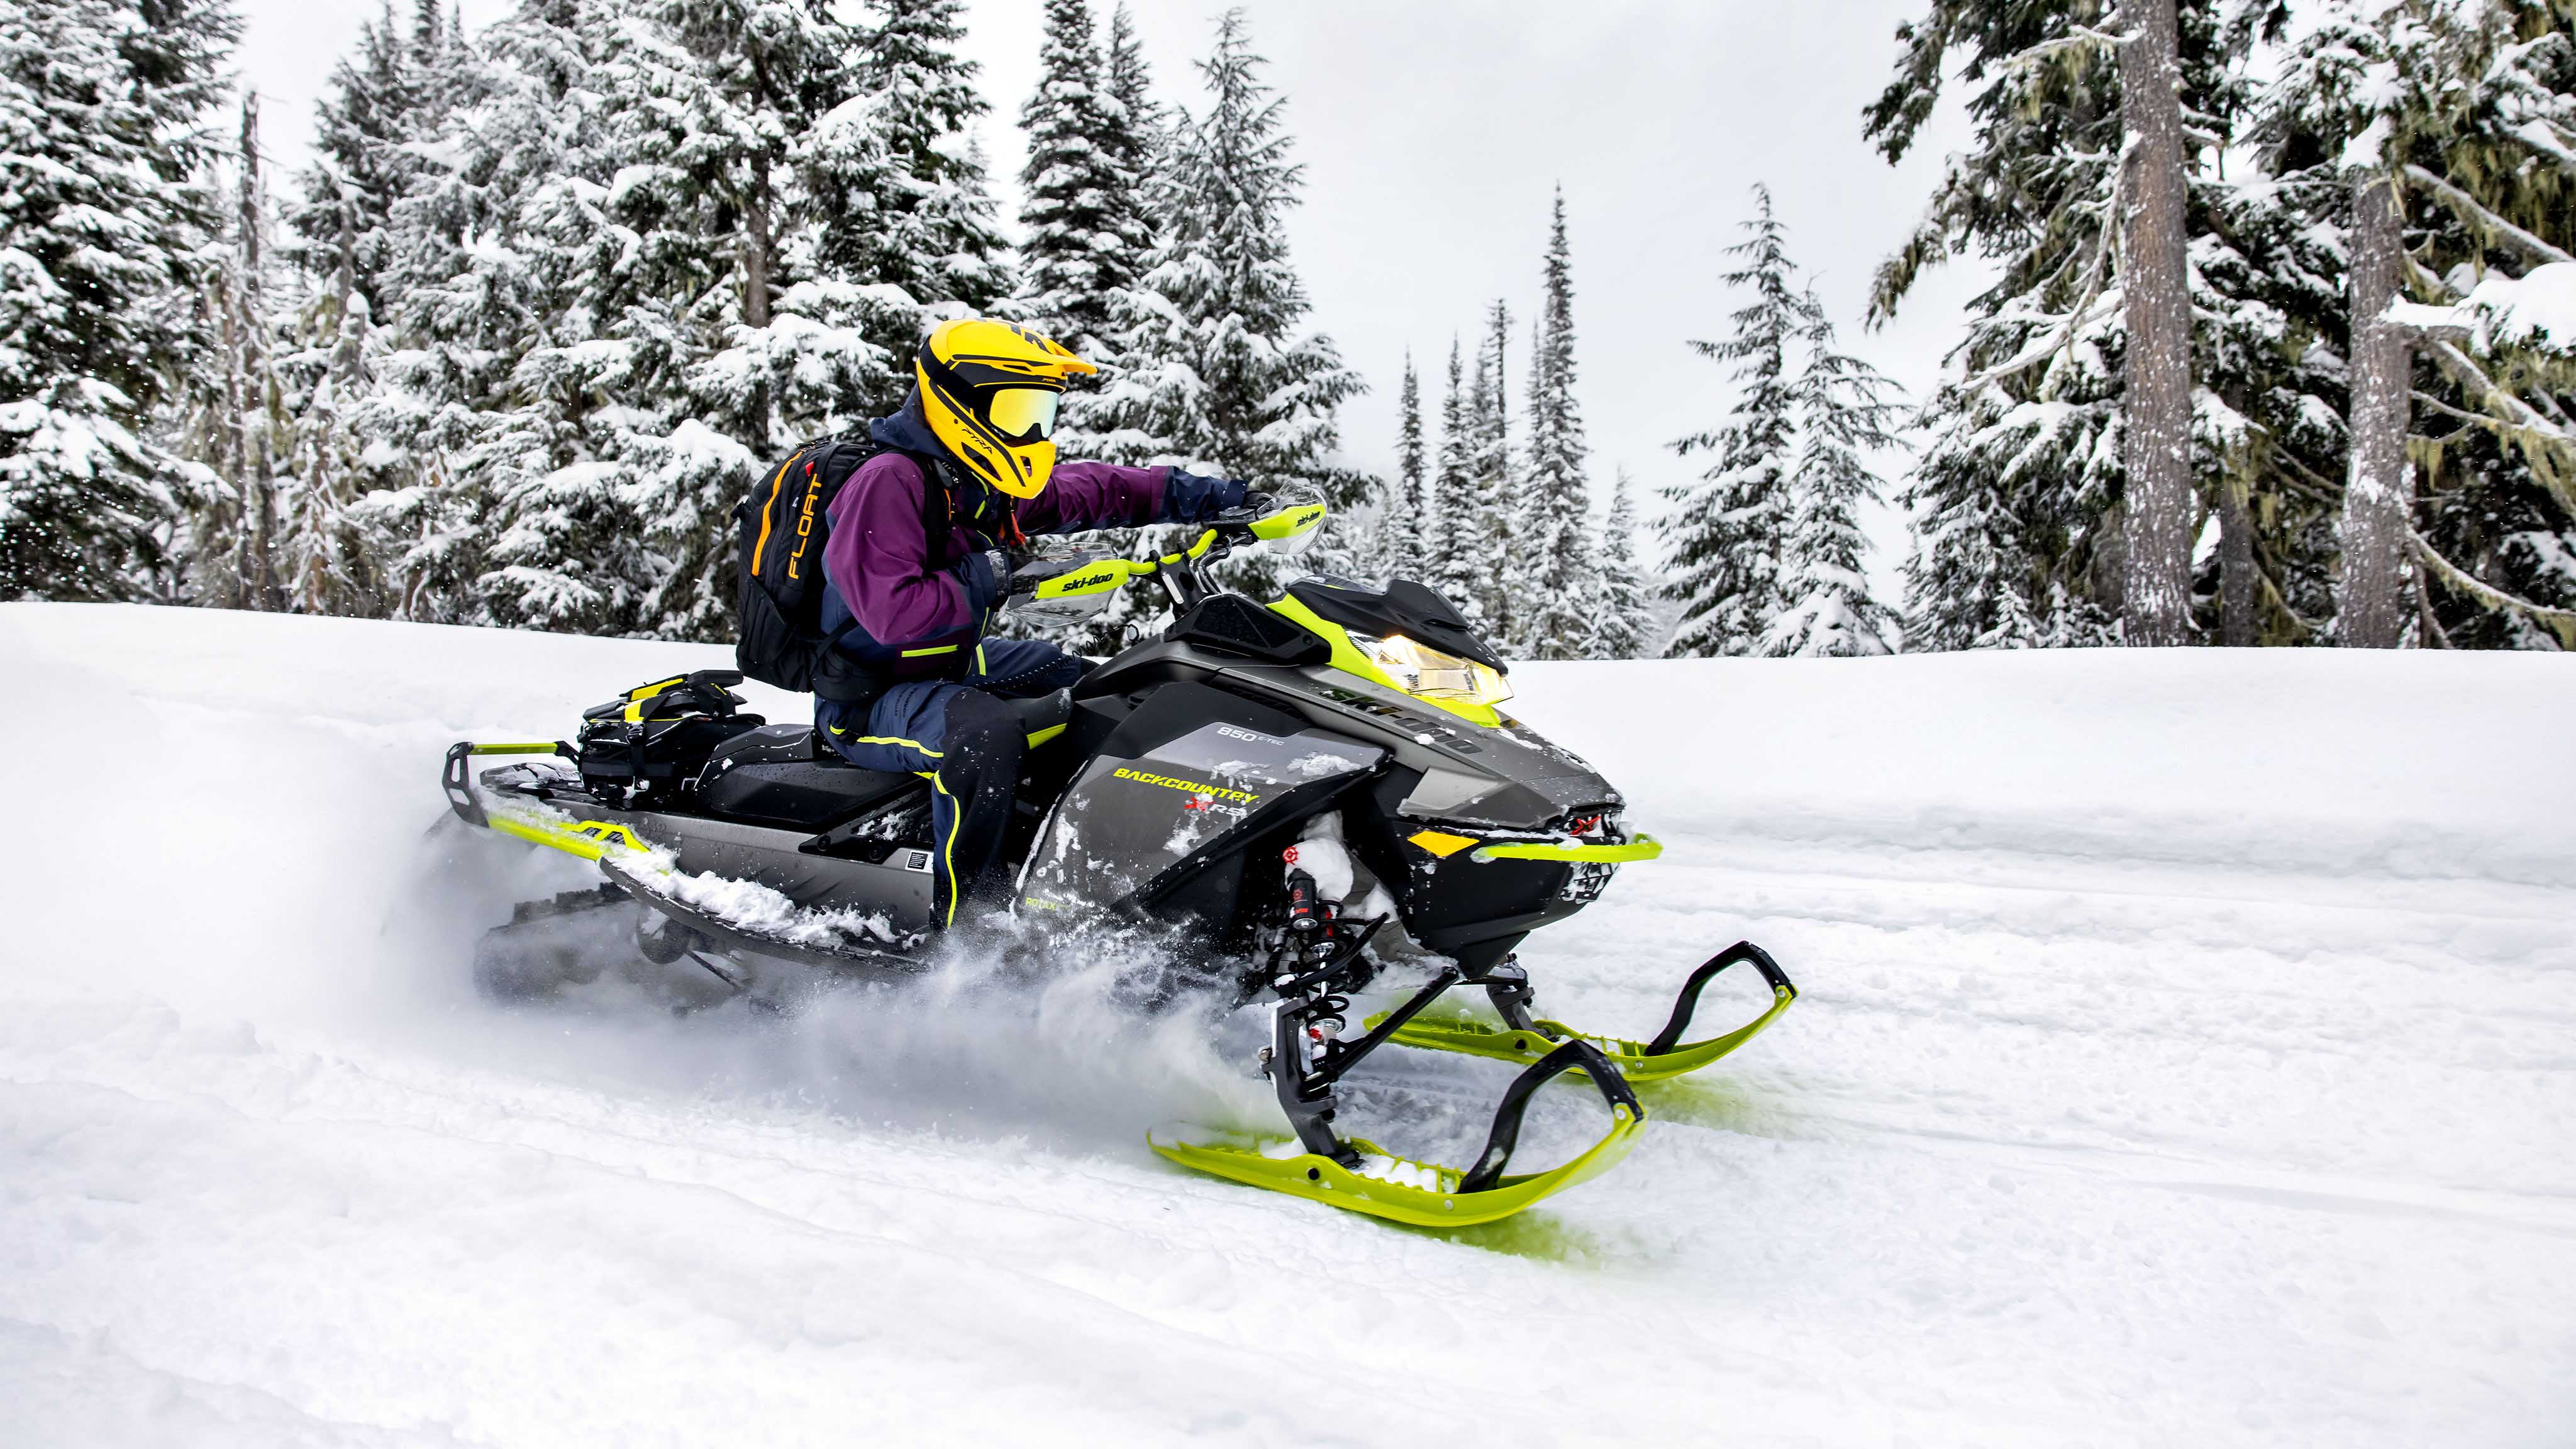 2023 Ski-Doo Backcountry ile bir patikada kar motosikleti yapan kadın